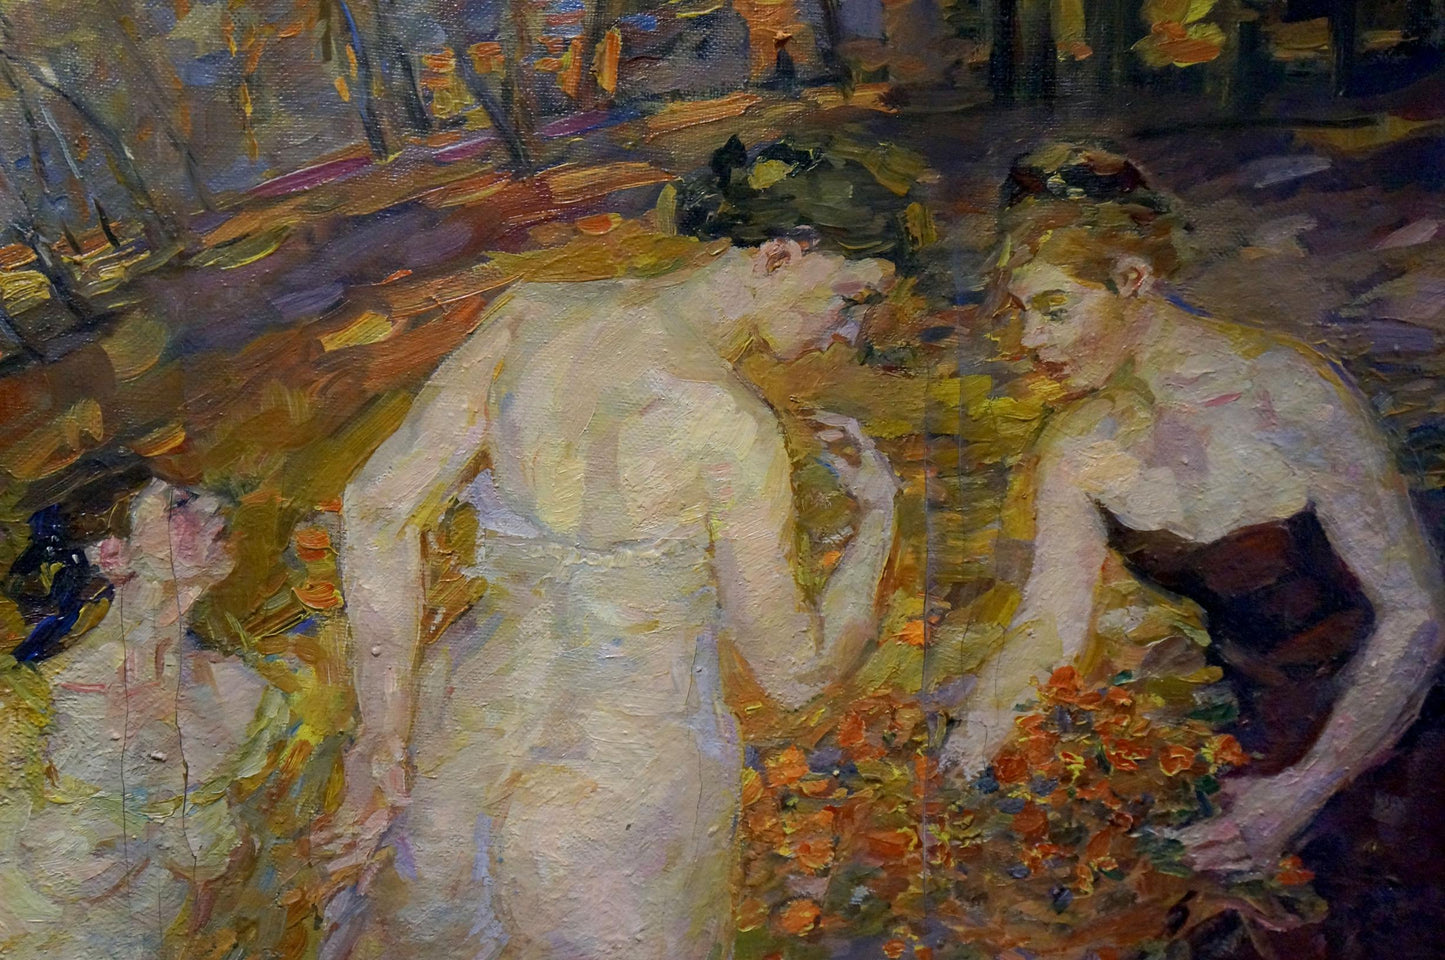 Oil painting Girls in the forest Odarka Tytarenko